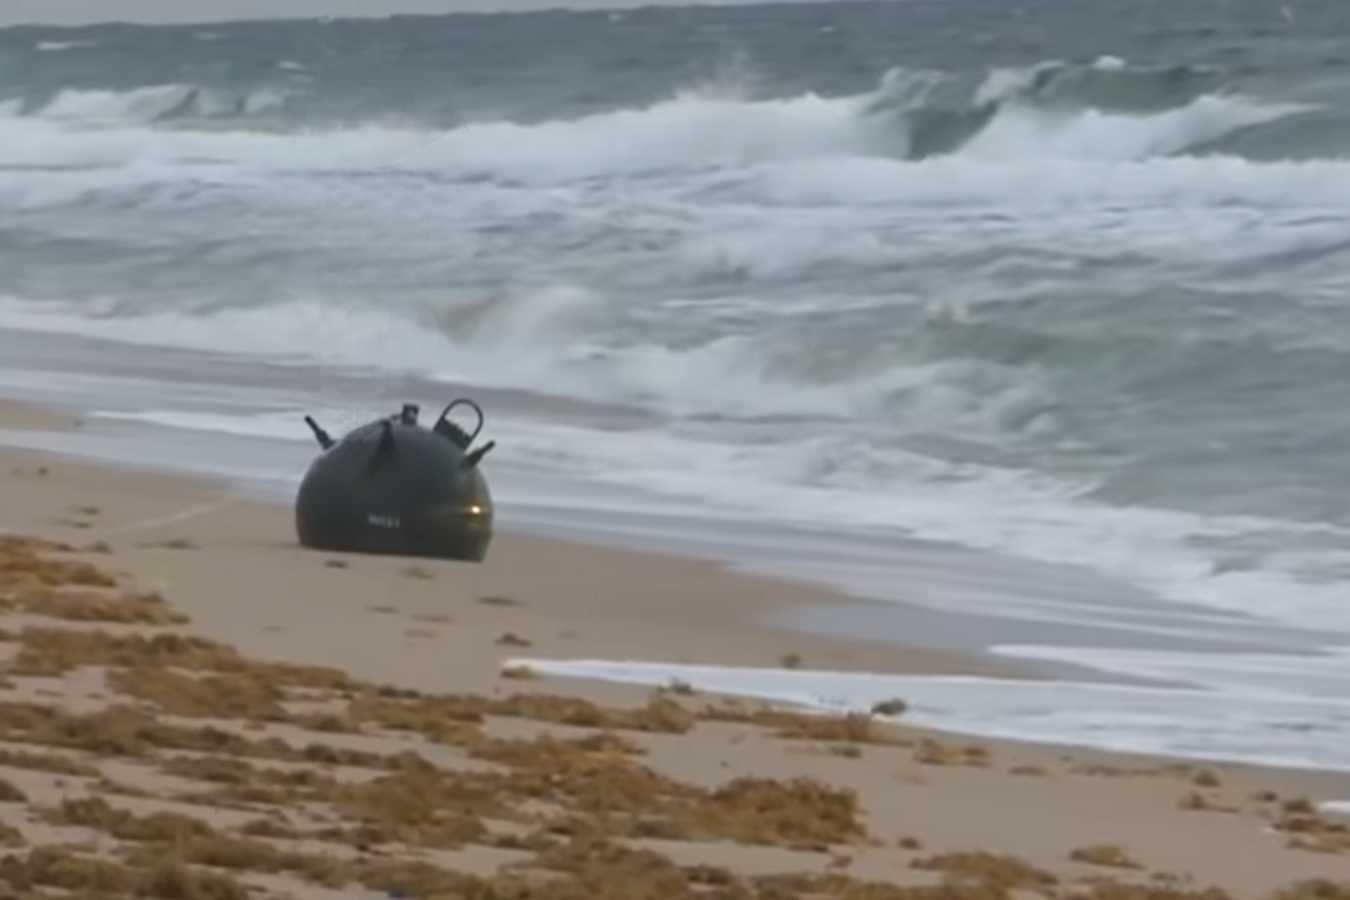 Polițiștii de frontieră au descoperit o mină marină scoasă de mare pe o plajă din zona Sfântu Gheorghe